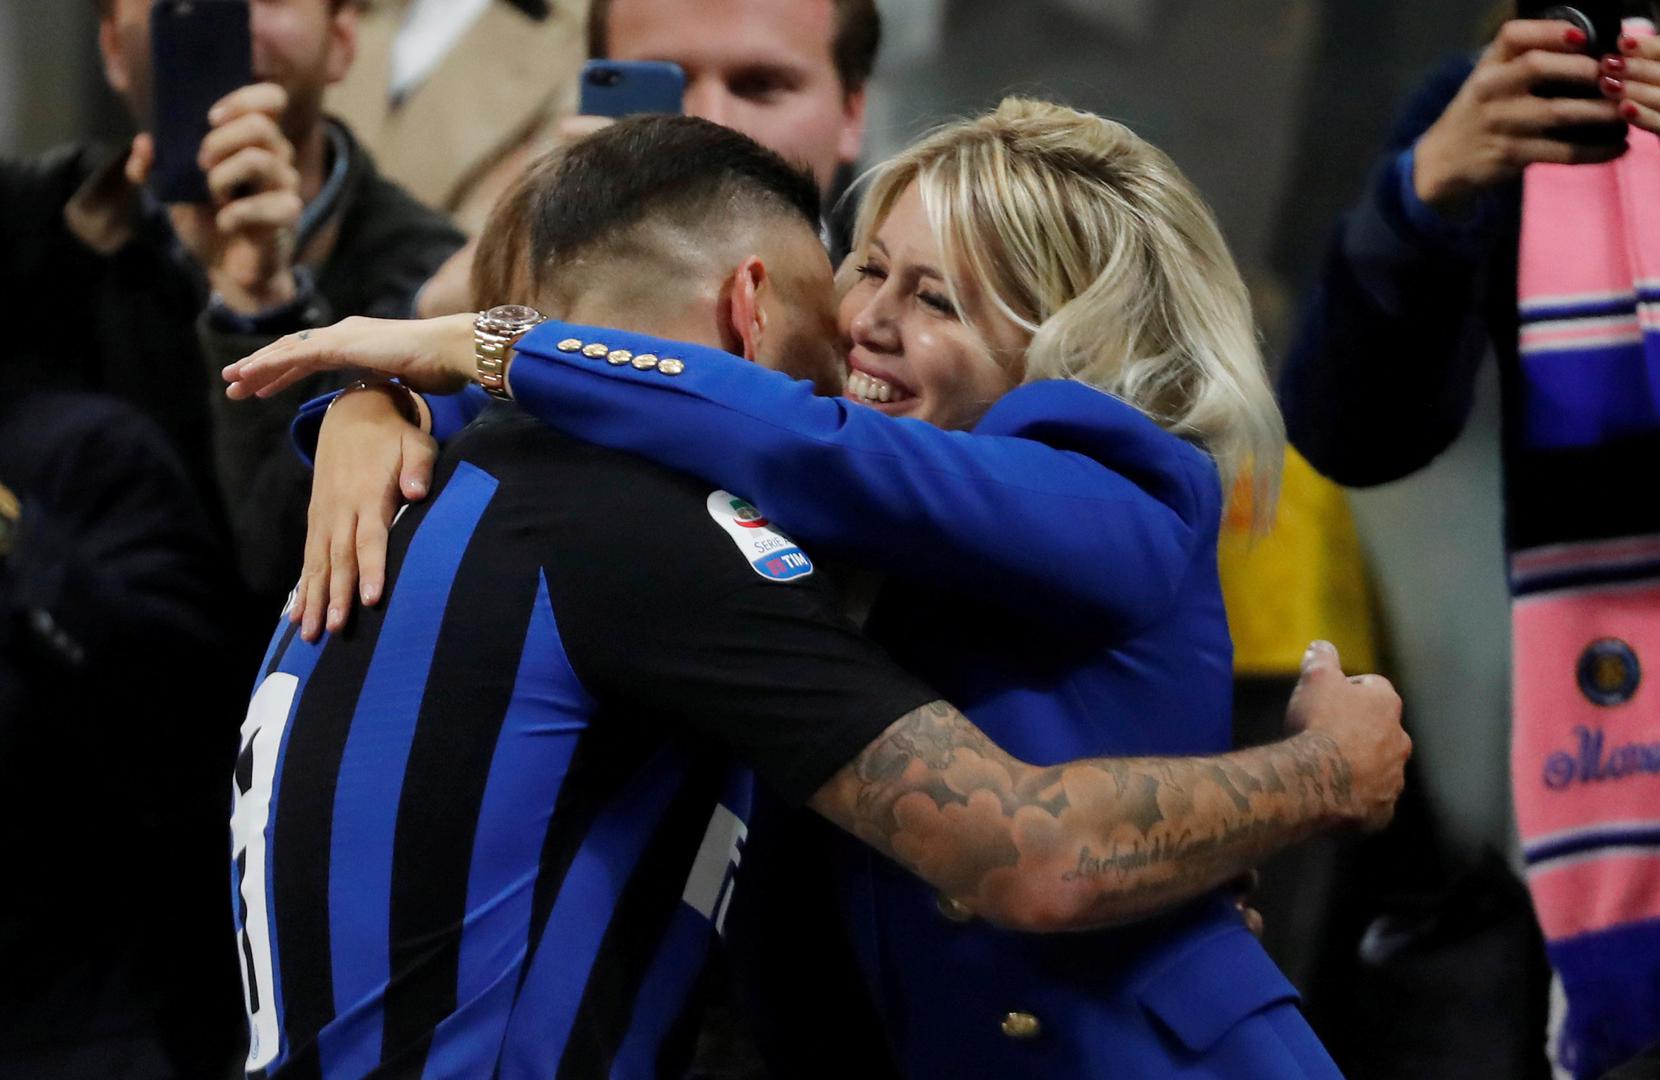 Nastavlja se sukob između vodstva talijanskog velikana Intera i argentinskog nogometaša Maura Icardija (26), a sve je zakuhala njegova supruga i menadžerica Wanda Nara.

